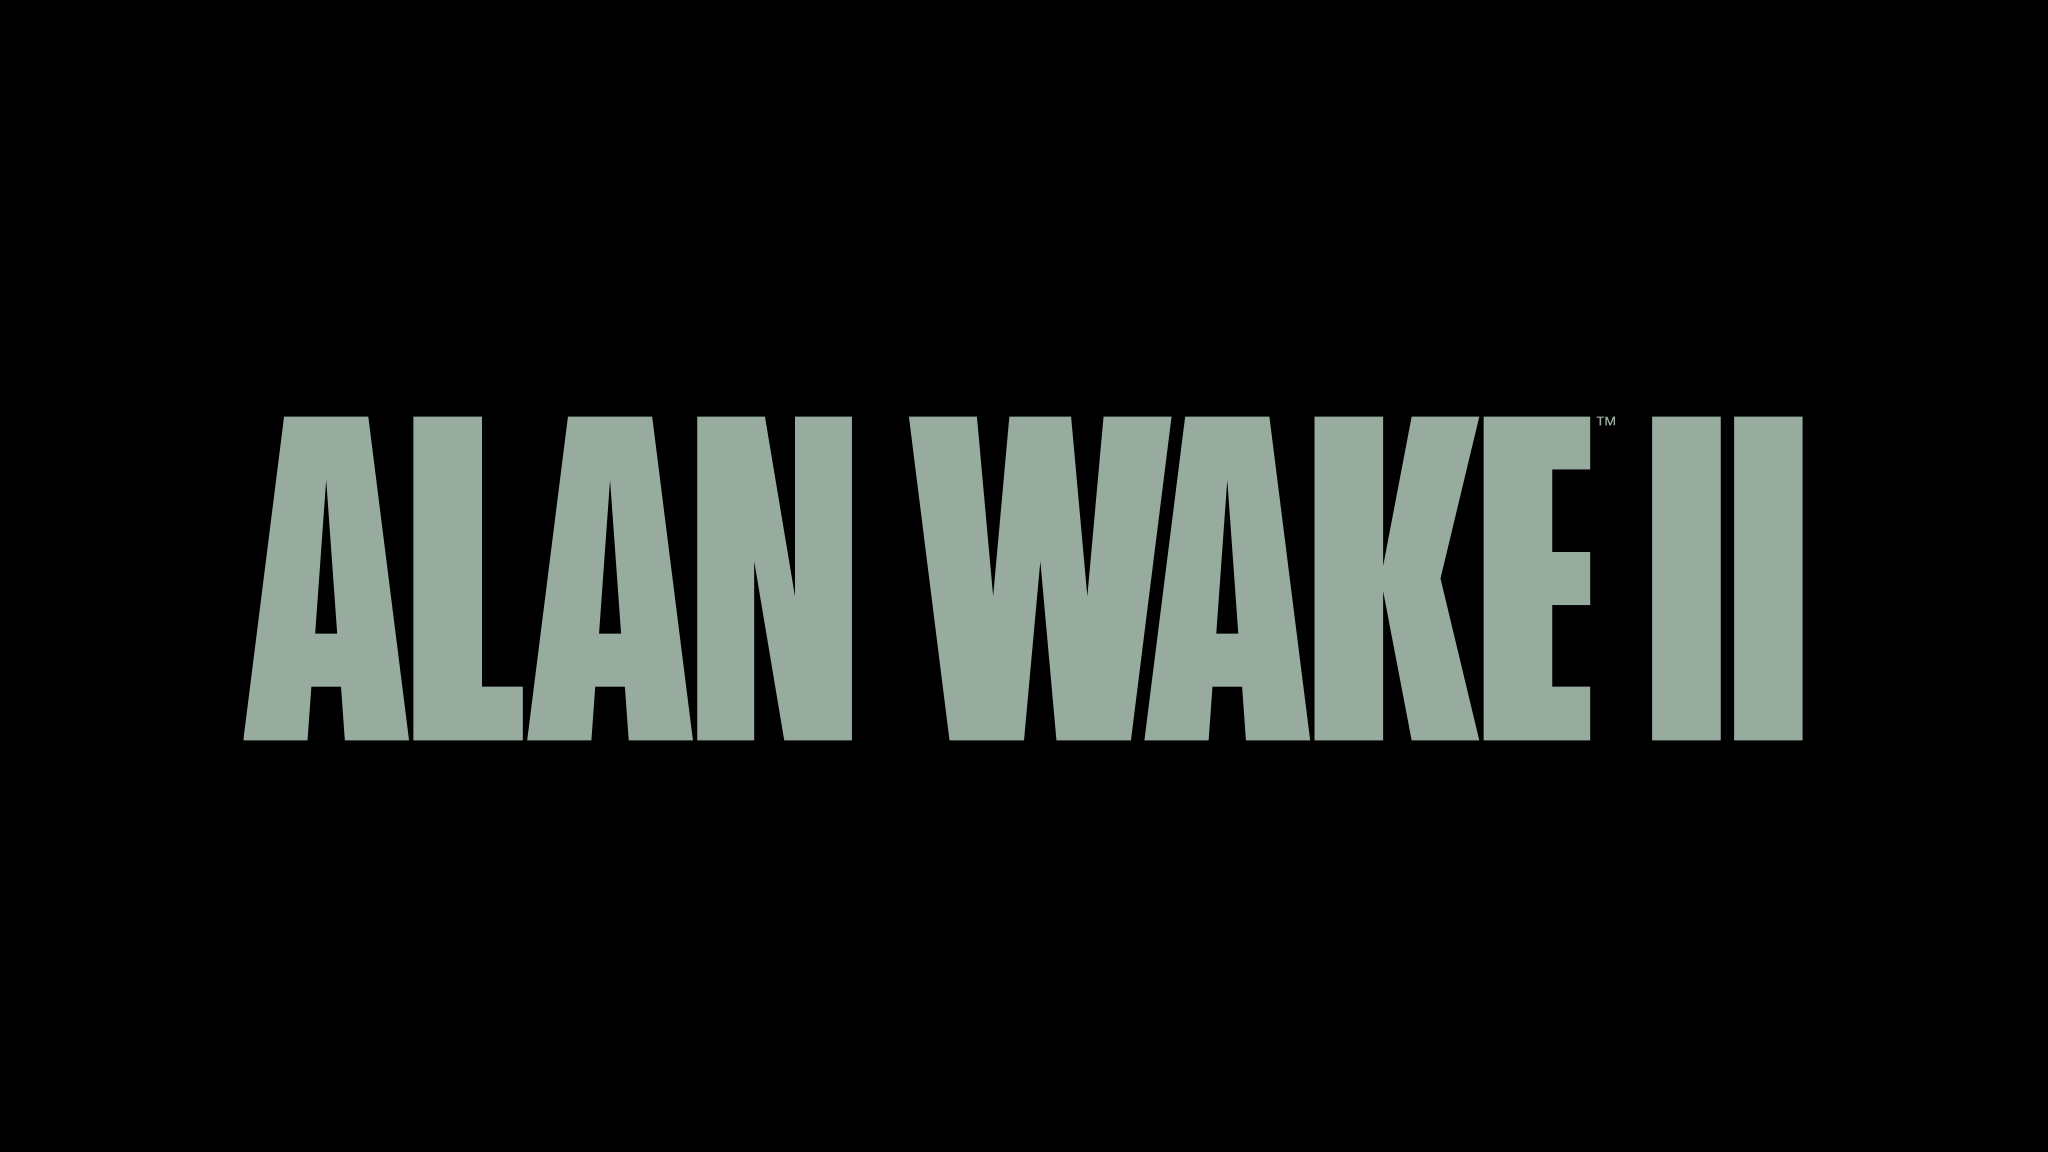 Alan Wake 2 game